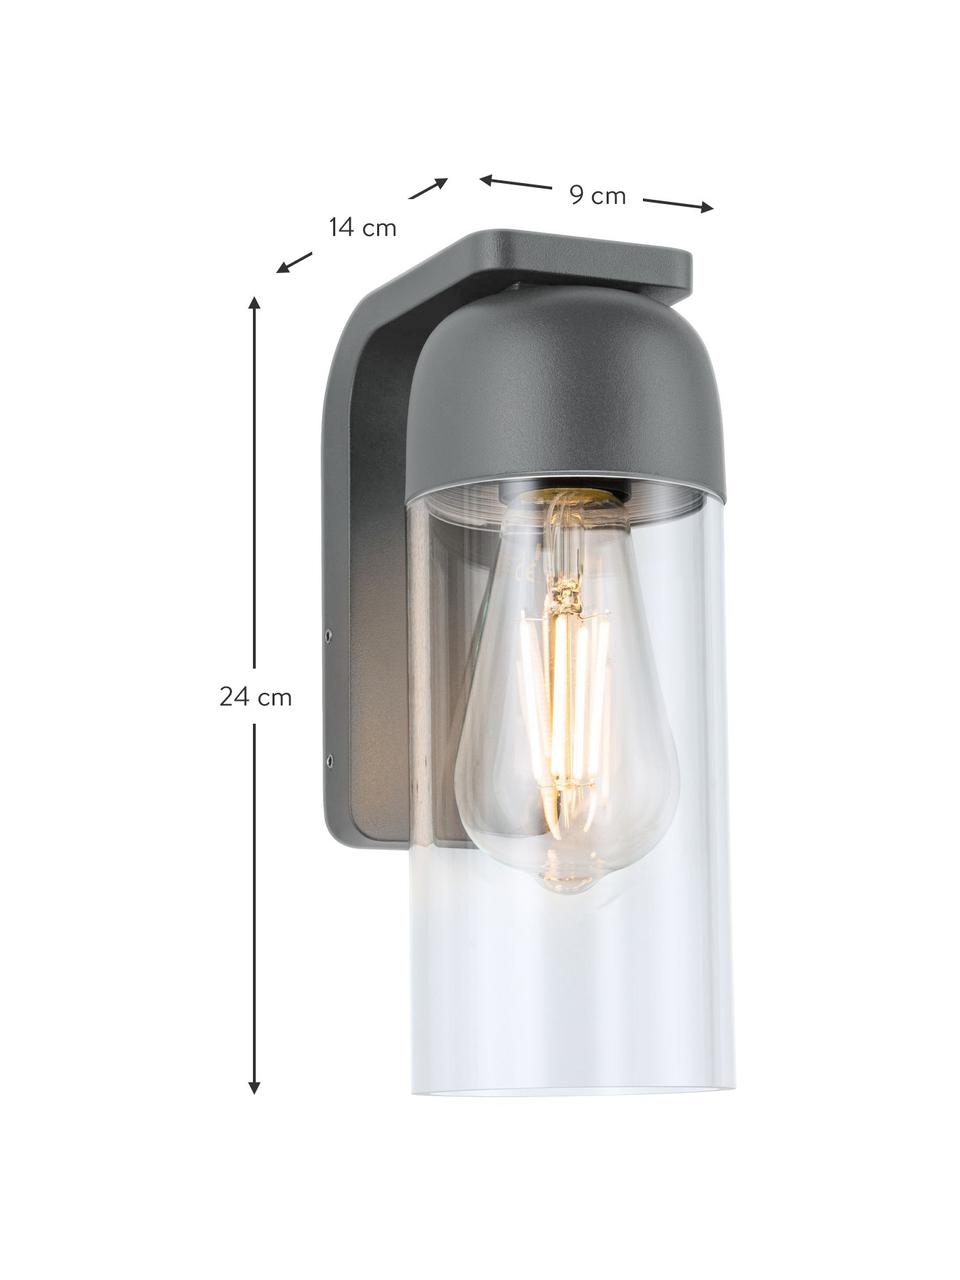 Outdoor wandlamp Lantea met glazen lampenkap, Lampenkap: glas Wandbevestiging, Zwart, transparant, B 9 x H 24 cm